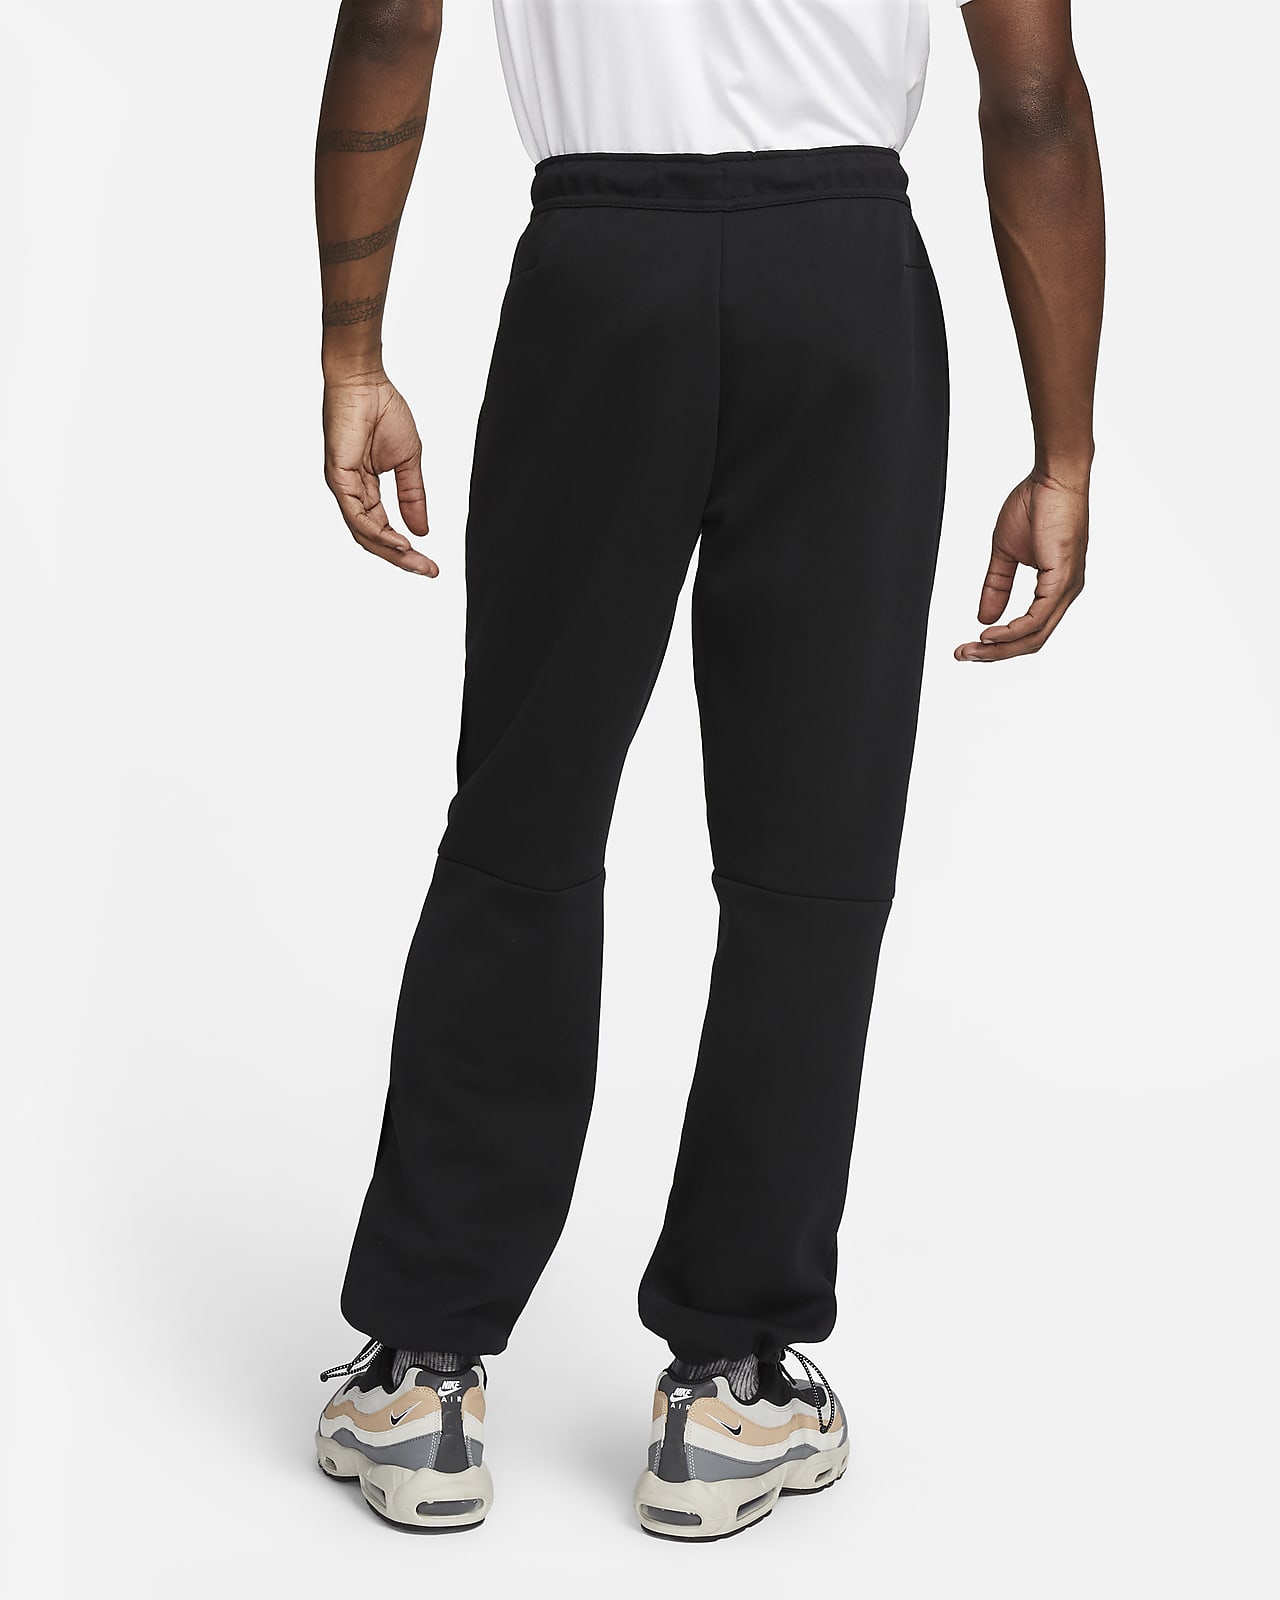 Voorlopige bijwoord telex Nike Sportswear Tech Fleece Men's Pants. Nike.com